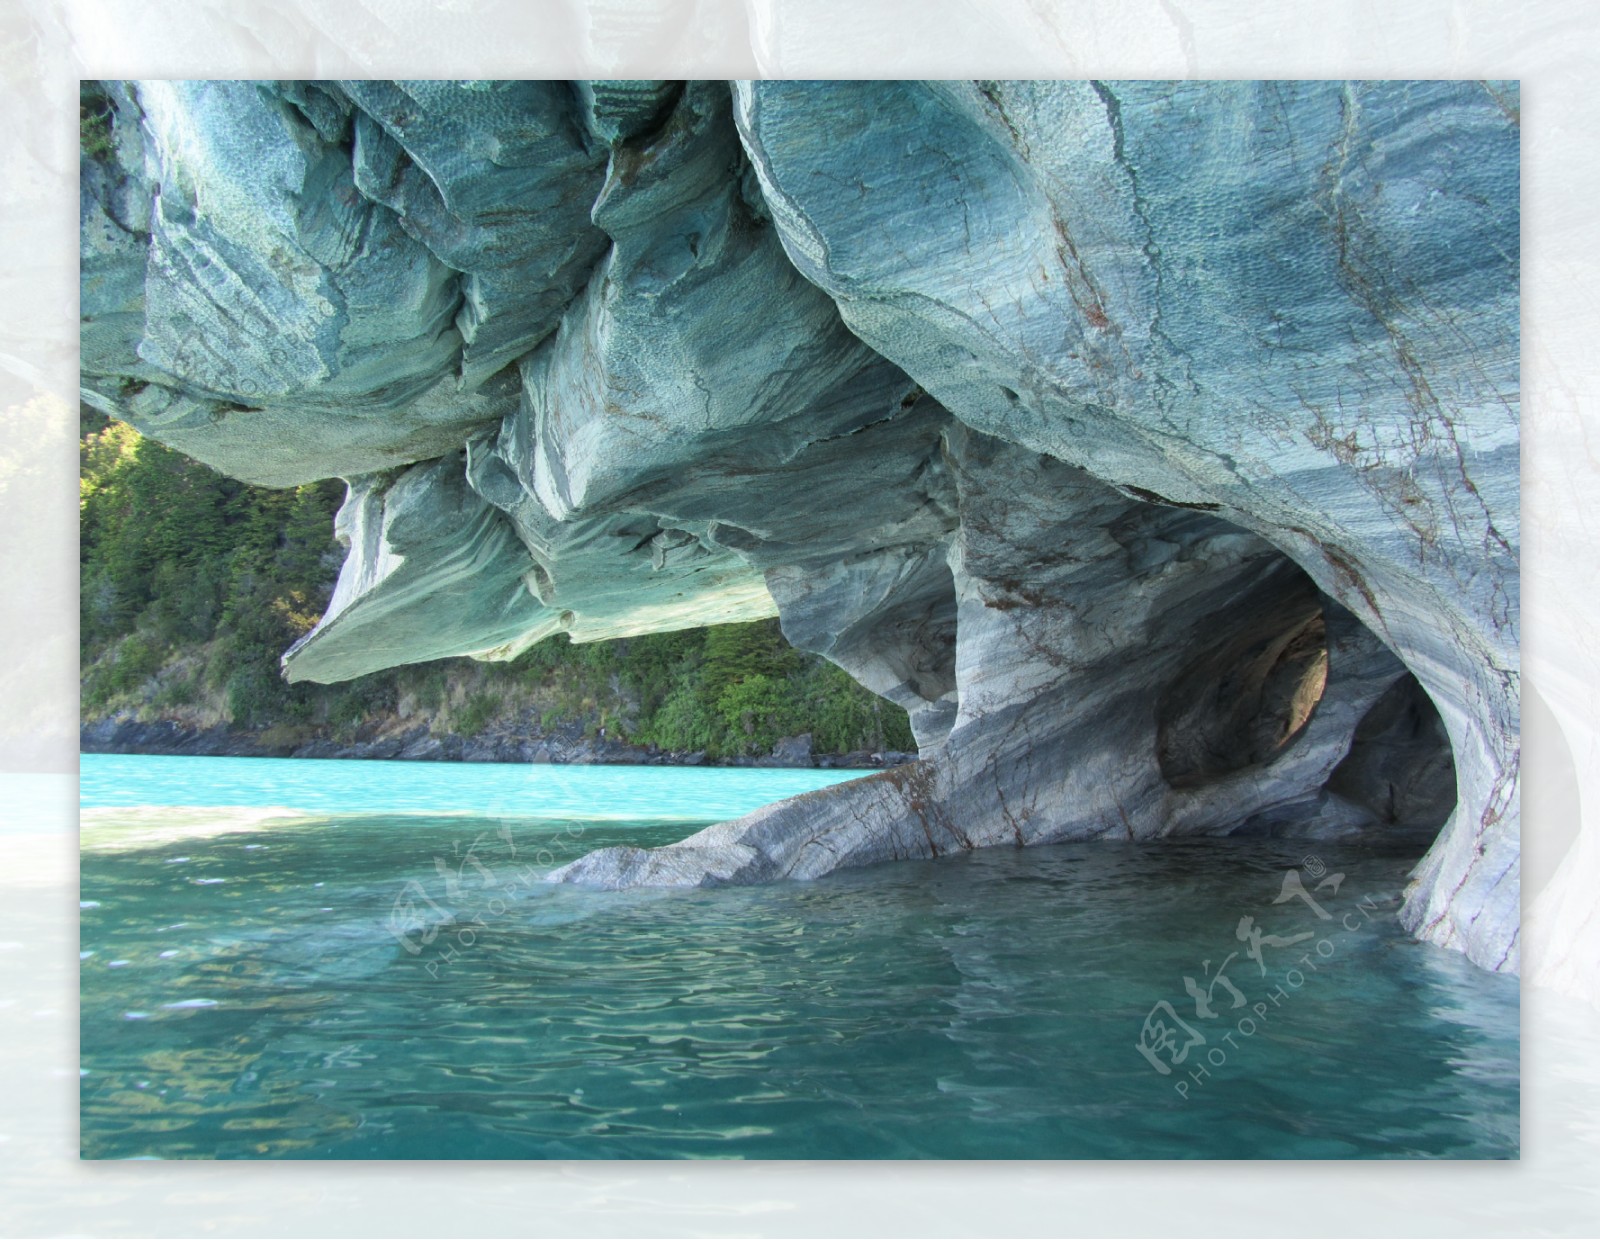 天然洞穴风景图片